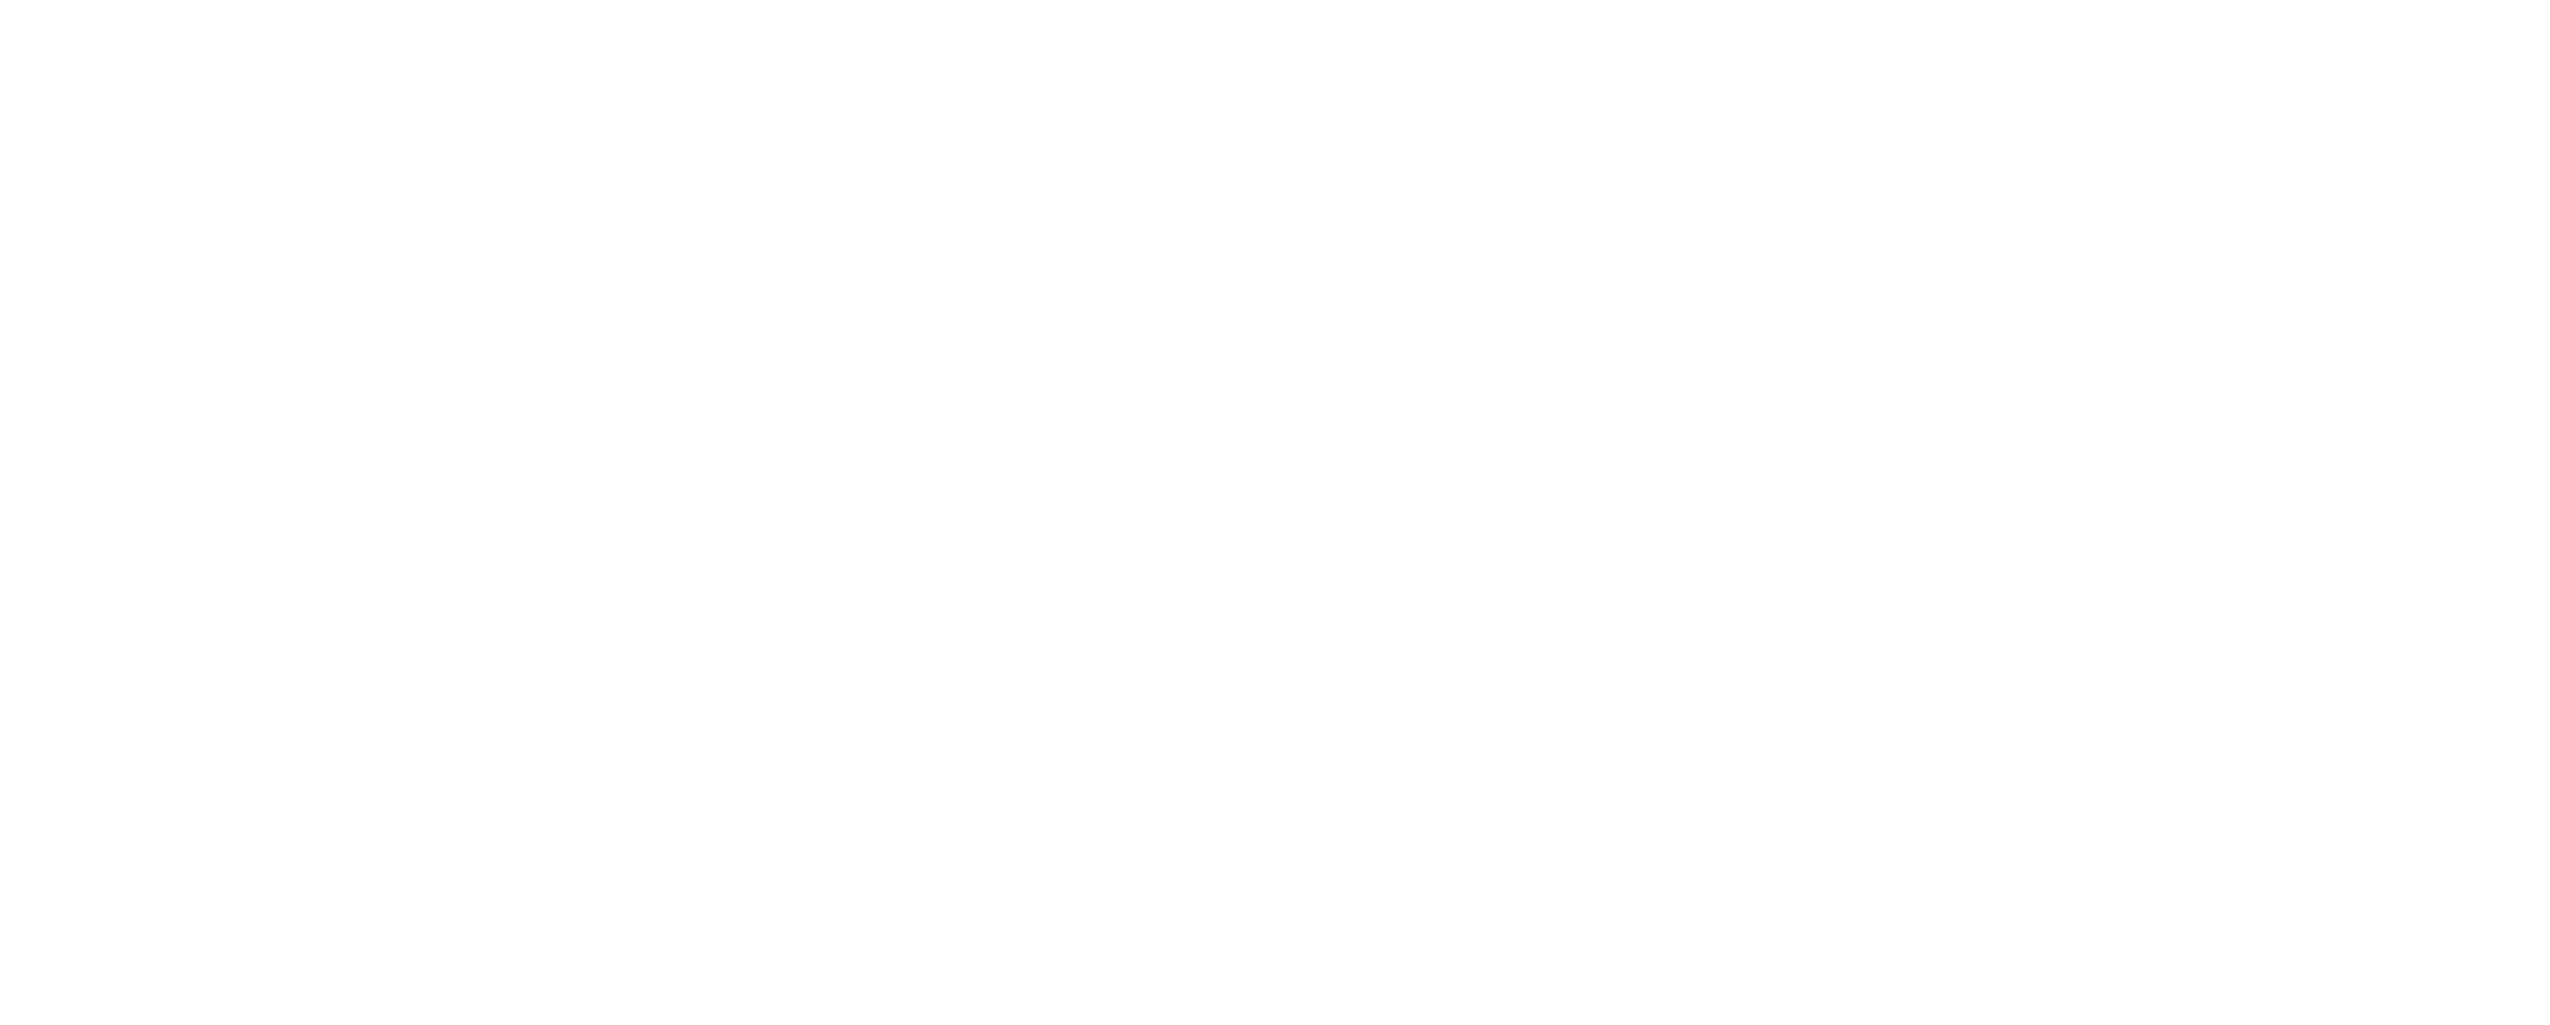 Circa Logo - Circa – Craft Cocktails